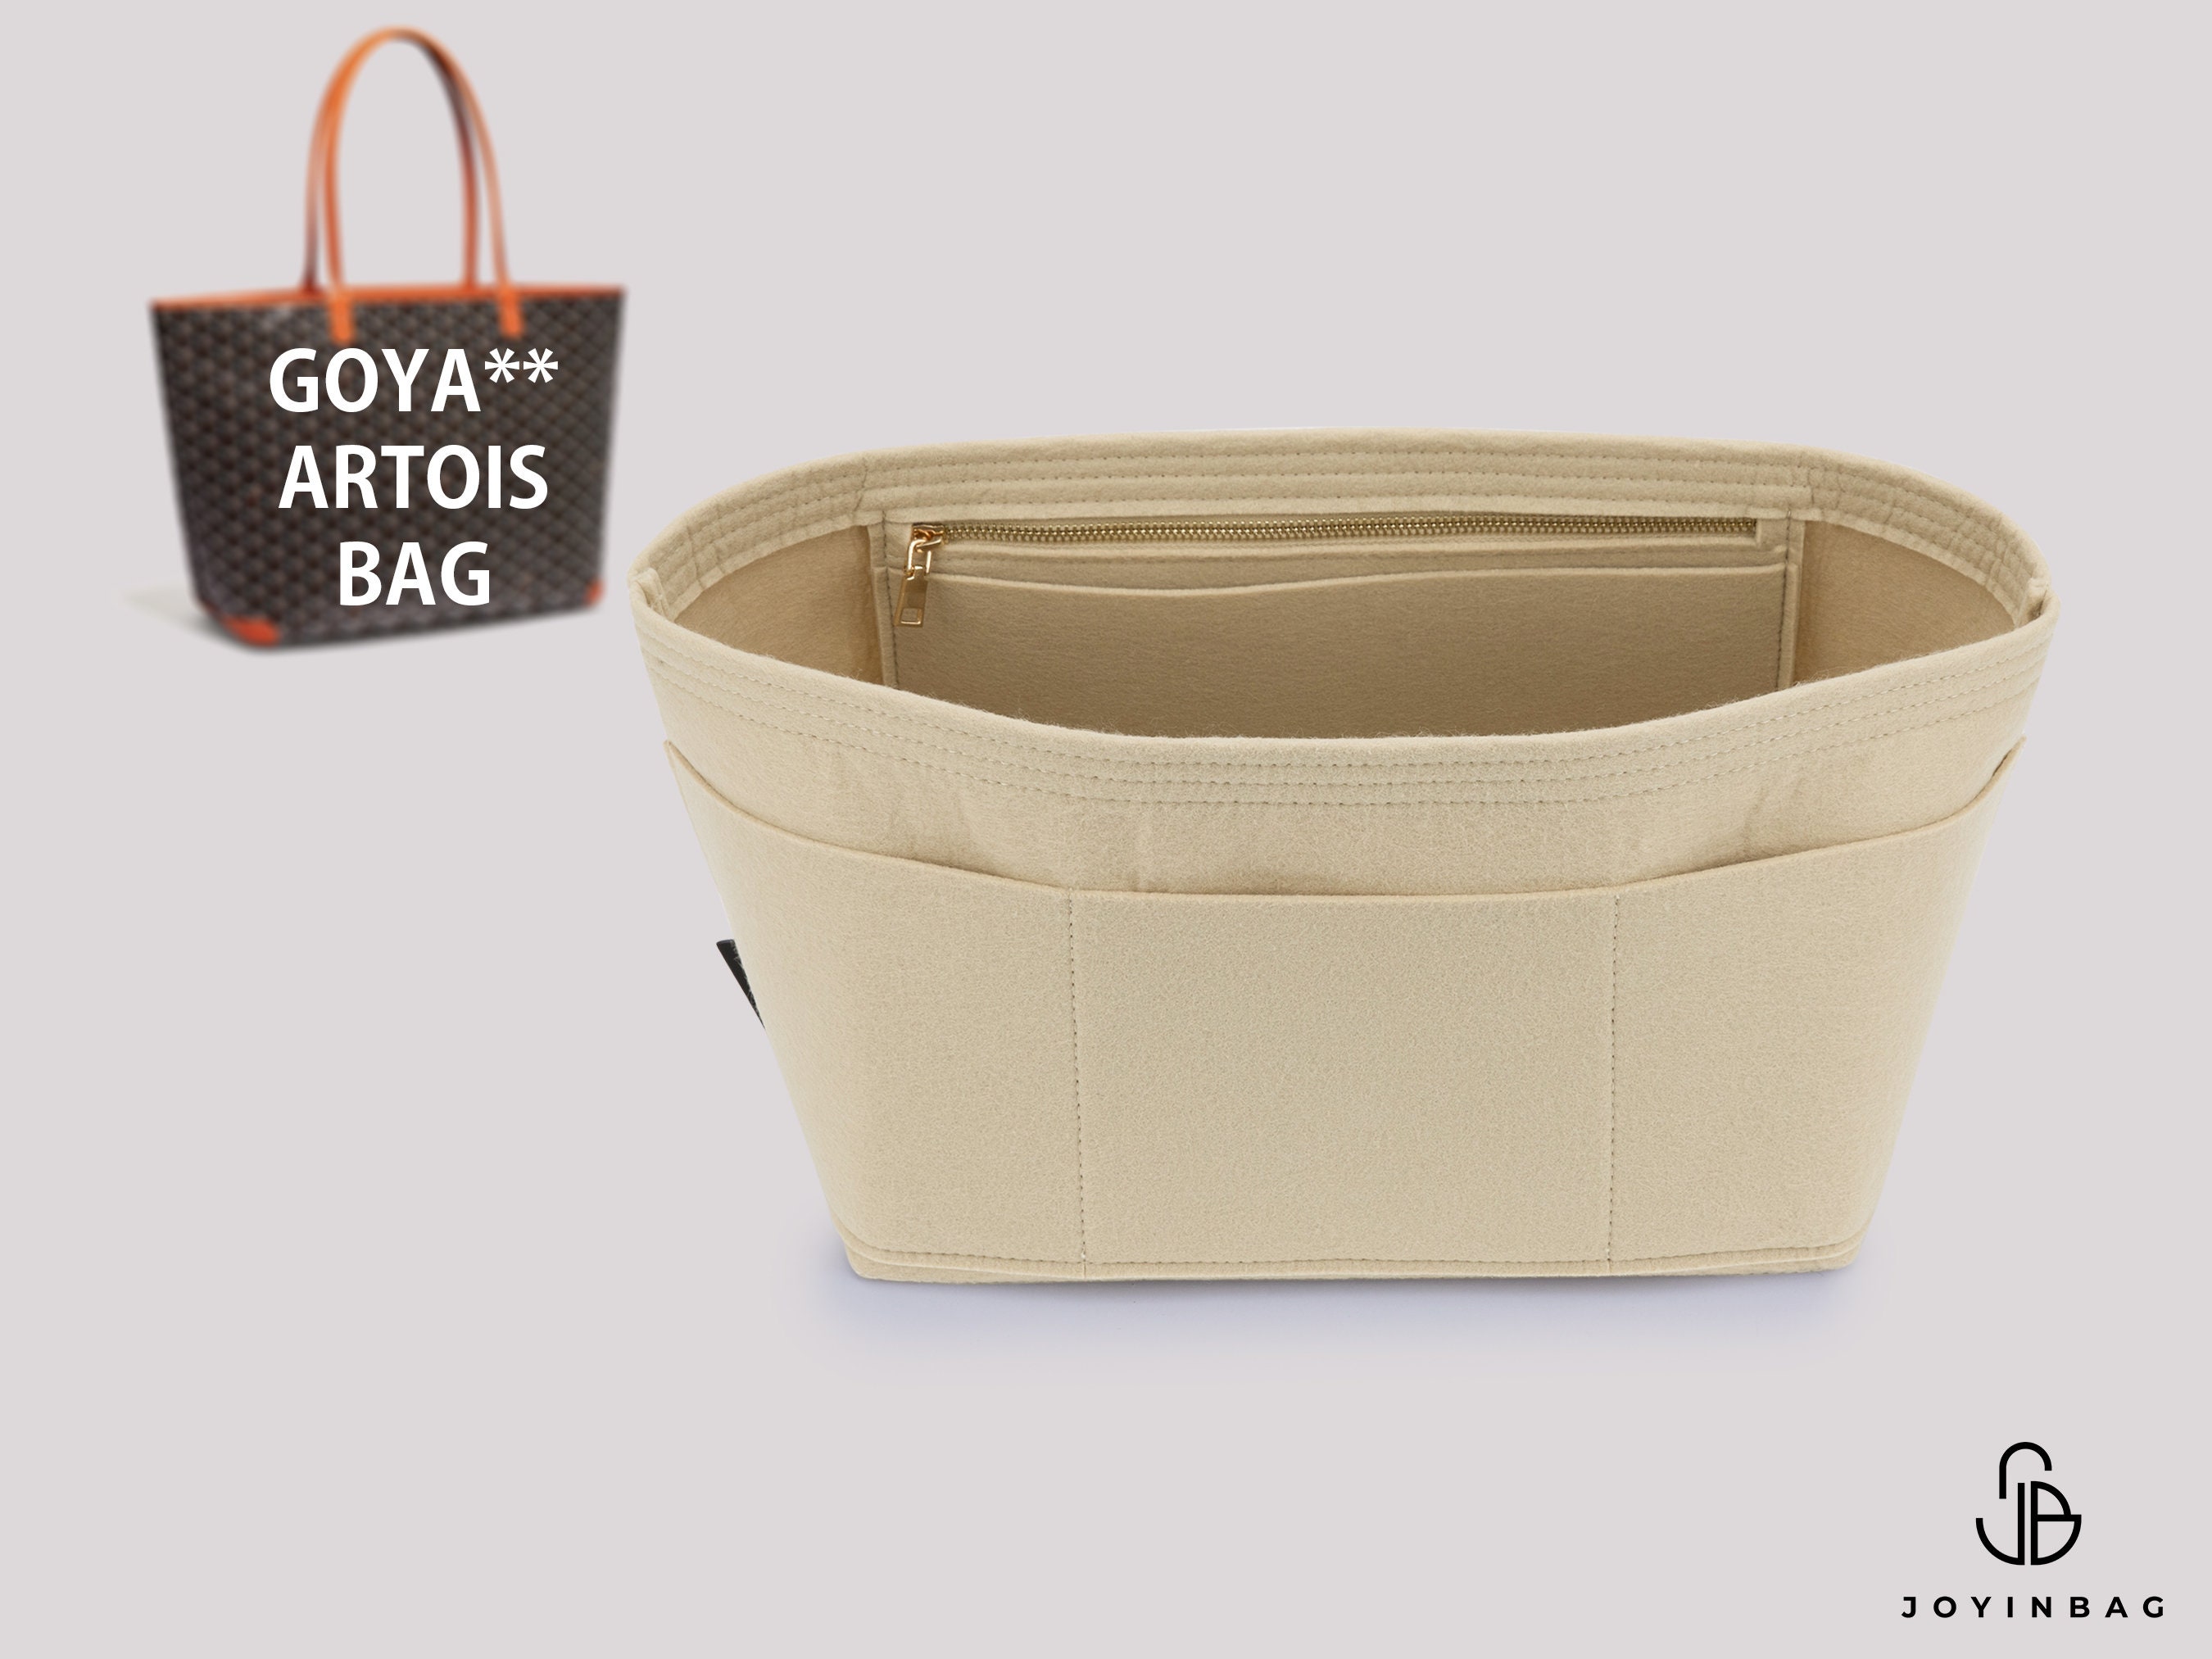 Taschenorganizer Einsatz für Goyard Shopper Tote Bag, Tote Bag Organizer,  Bag Liner, Geldbörse Insert Shaper - .de